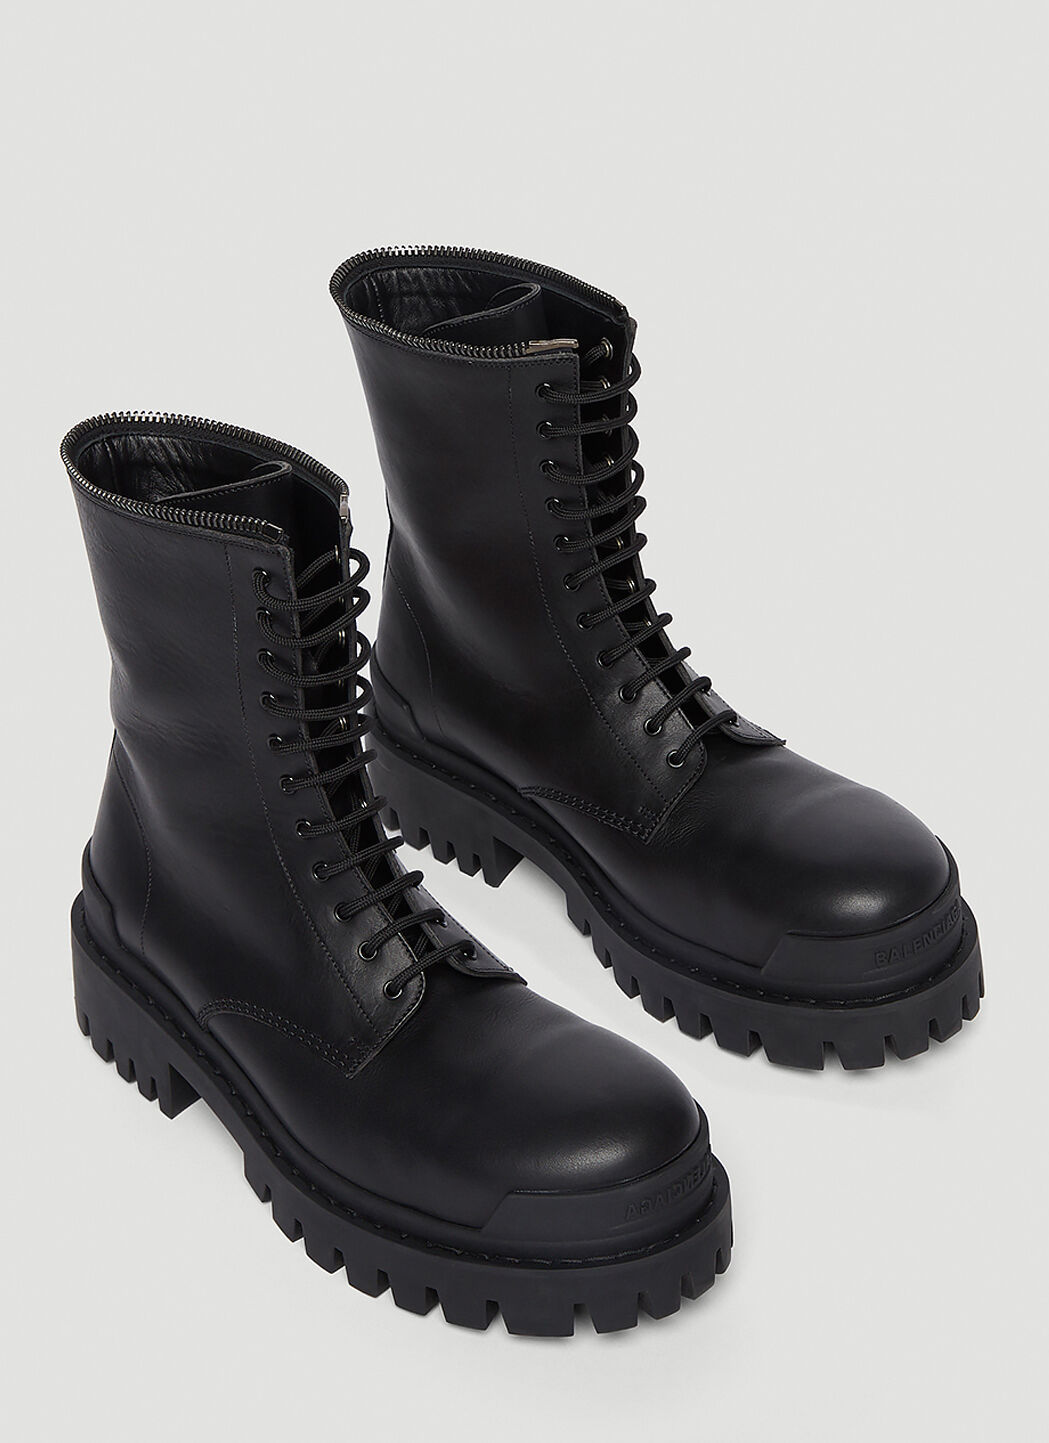 Balenciaga Strike Combat Boots Size 40  eBay